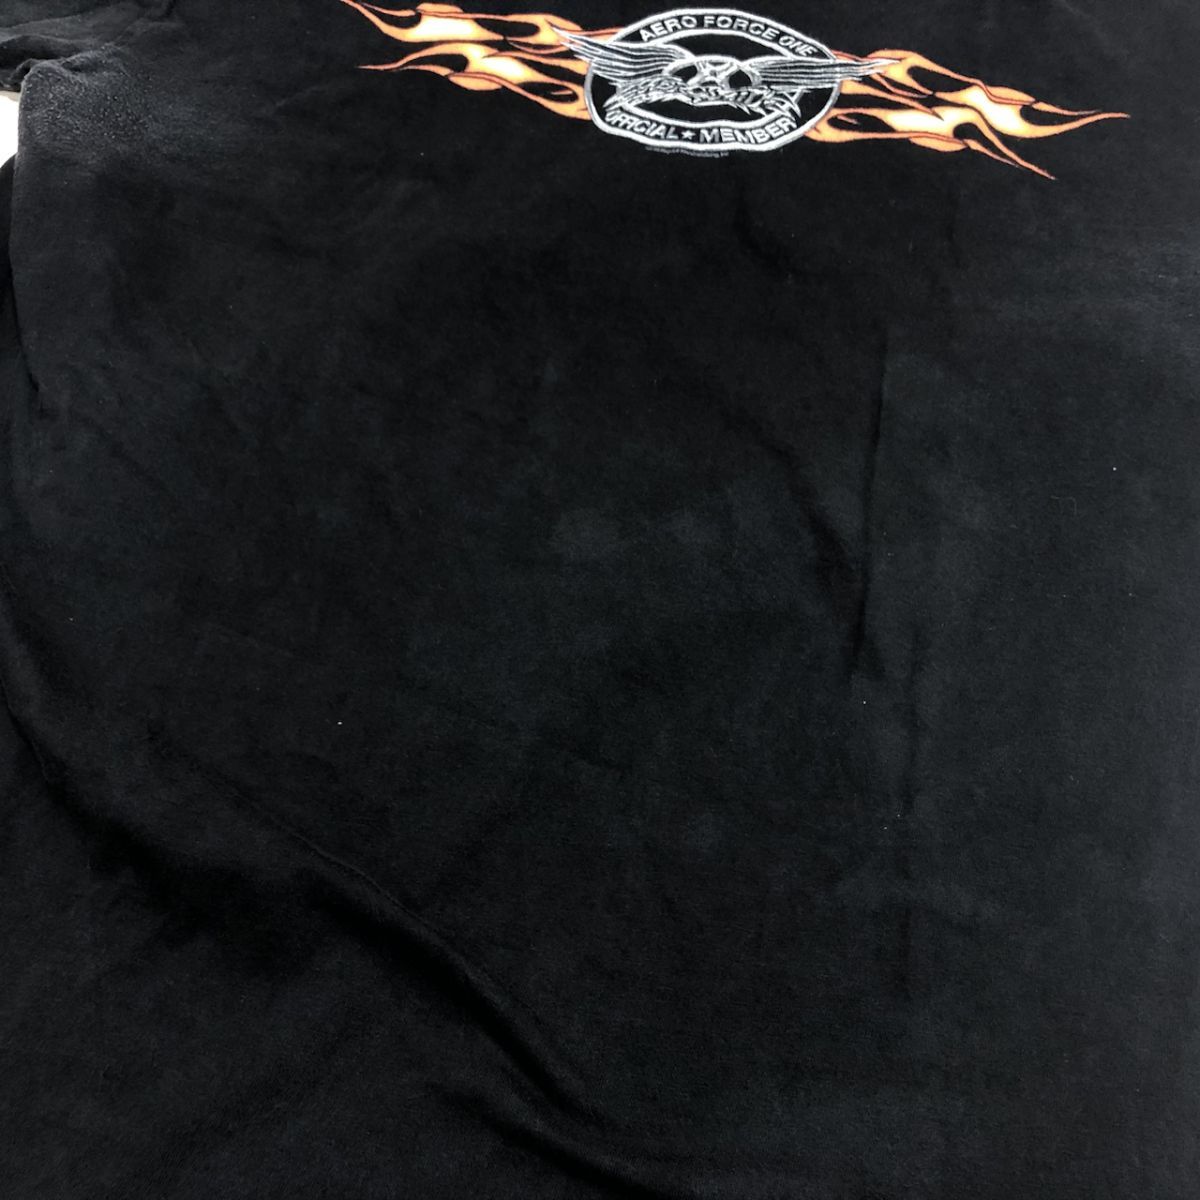 Aerosmith エアロスミス Tシャツ ファンクラブサイト AERO FORCE ONE ブラック XL 古着 ロック バンド ビンテージ[Q6505]_画像8